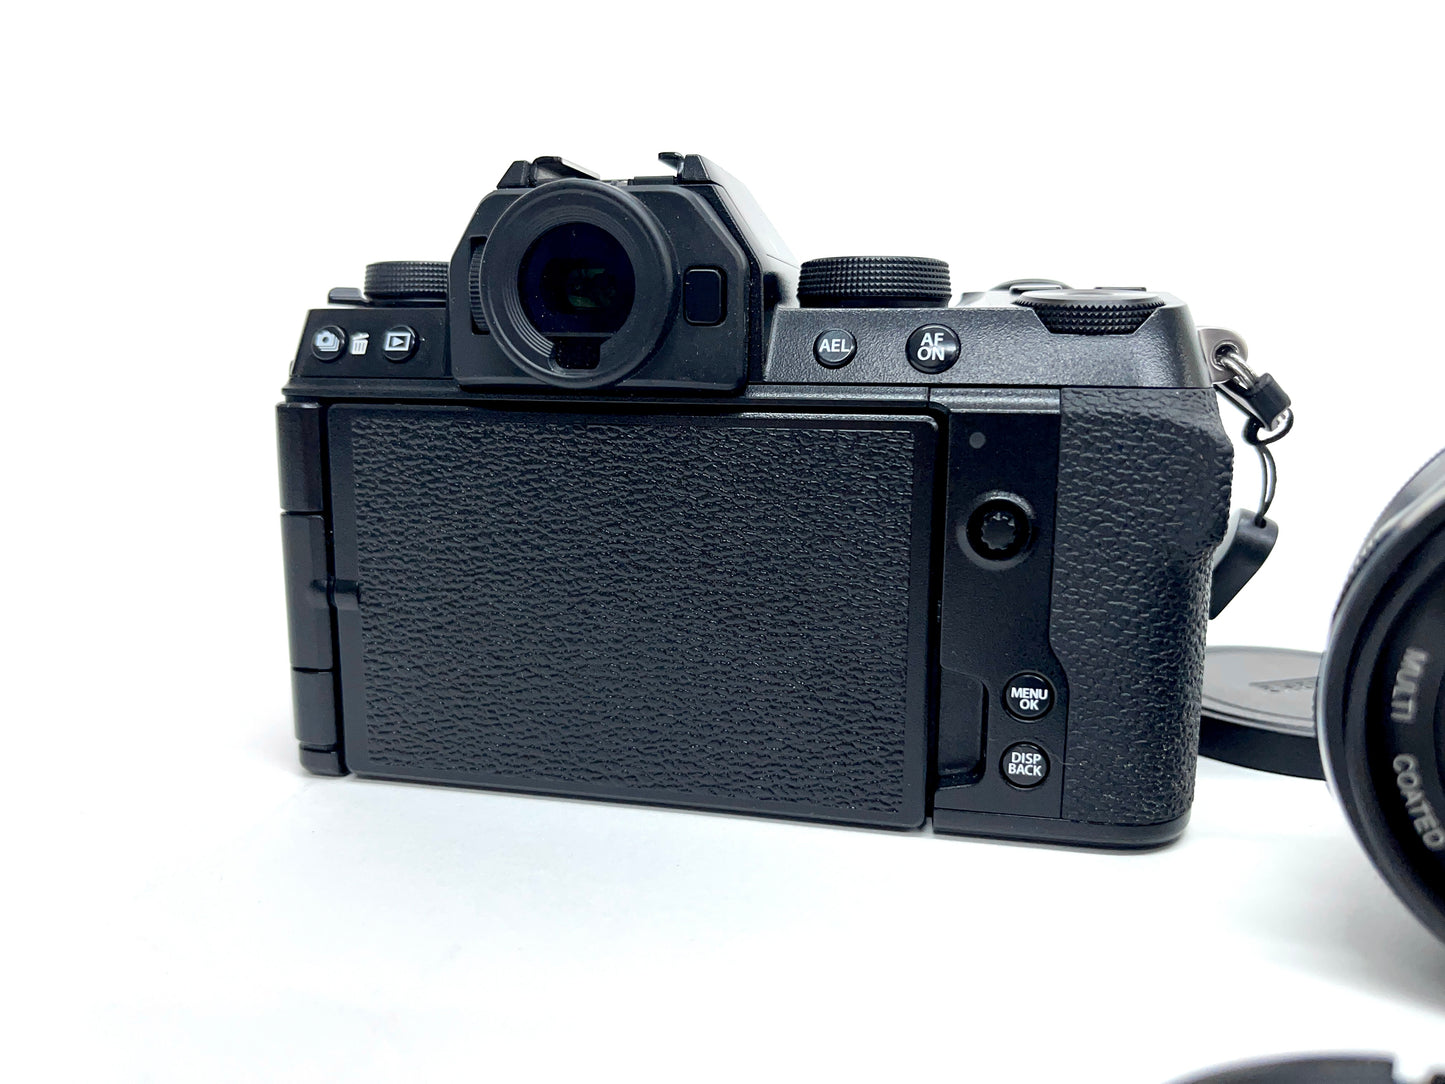 Fujifilm X-S10 Mirrorless Camera Kit + 15-45mm 35mm f/1.7 and Batteries